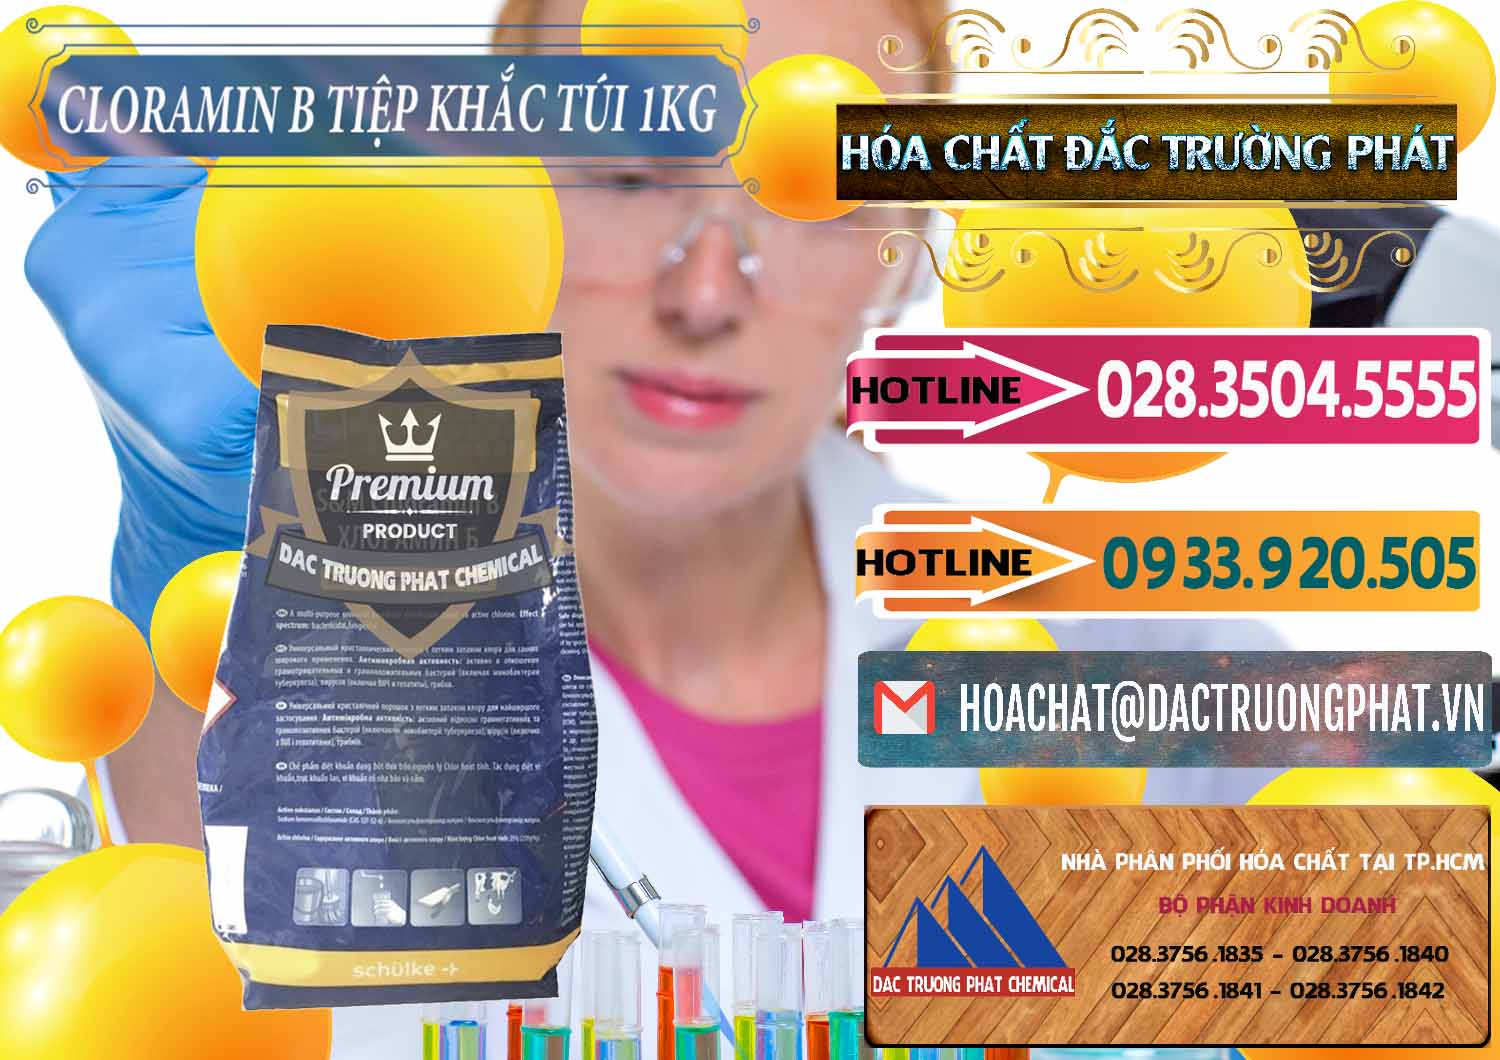 Công ty chuyên bán _ phân phối Cloramin B Dạng Túi ( Bịch ) Cộng Hòa Séc Tiệp Khắc Czech Republic - 0300 - Cung cấp & kinh doanh hóa chất tại TP.HCM - dactruongphat.vn